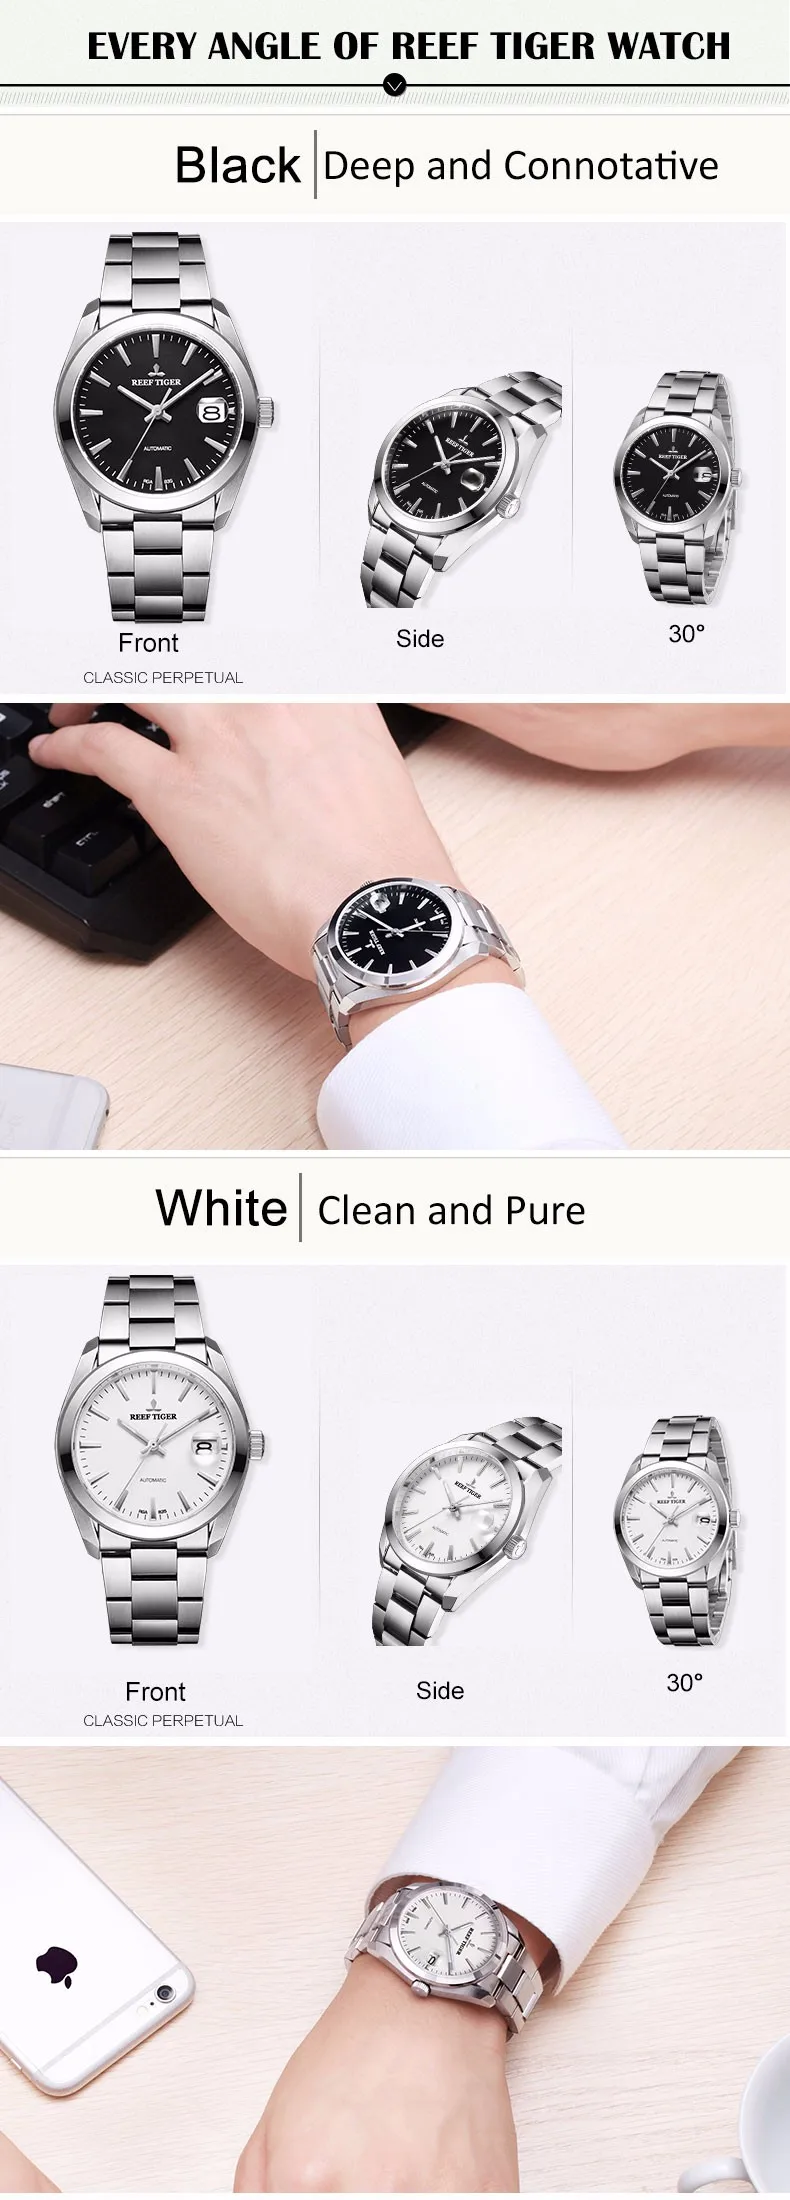 Риф Тигр модные роскошные нарядные часы простые мужские часы с большой датой из нержавеющей стали автоматические деловые повседневные мужские часы RGA835